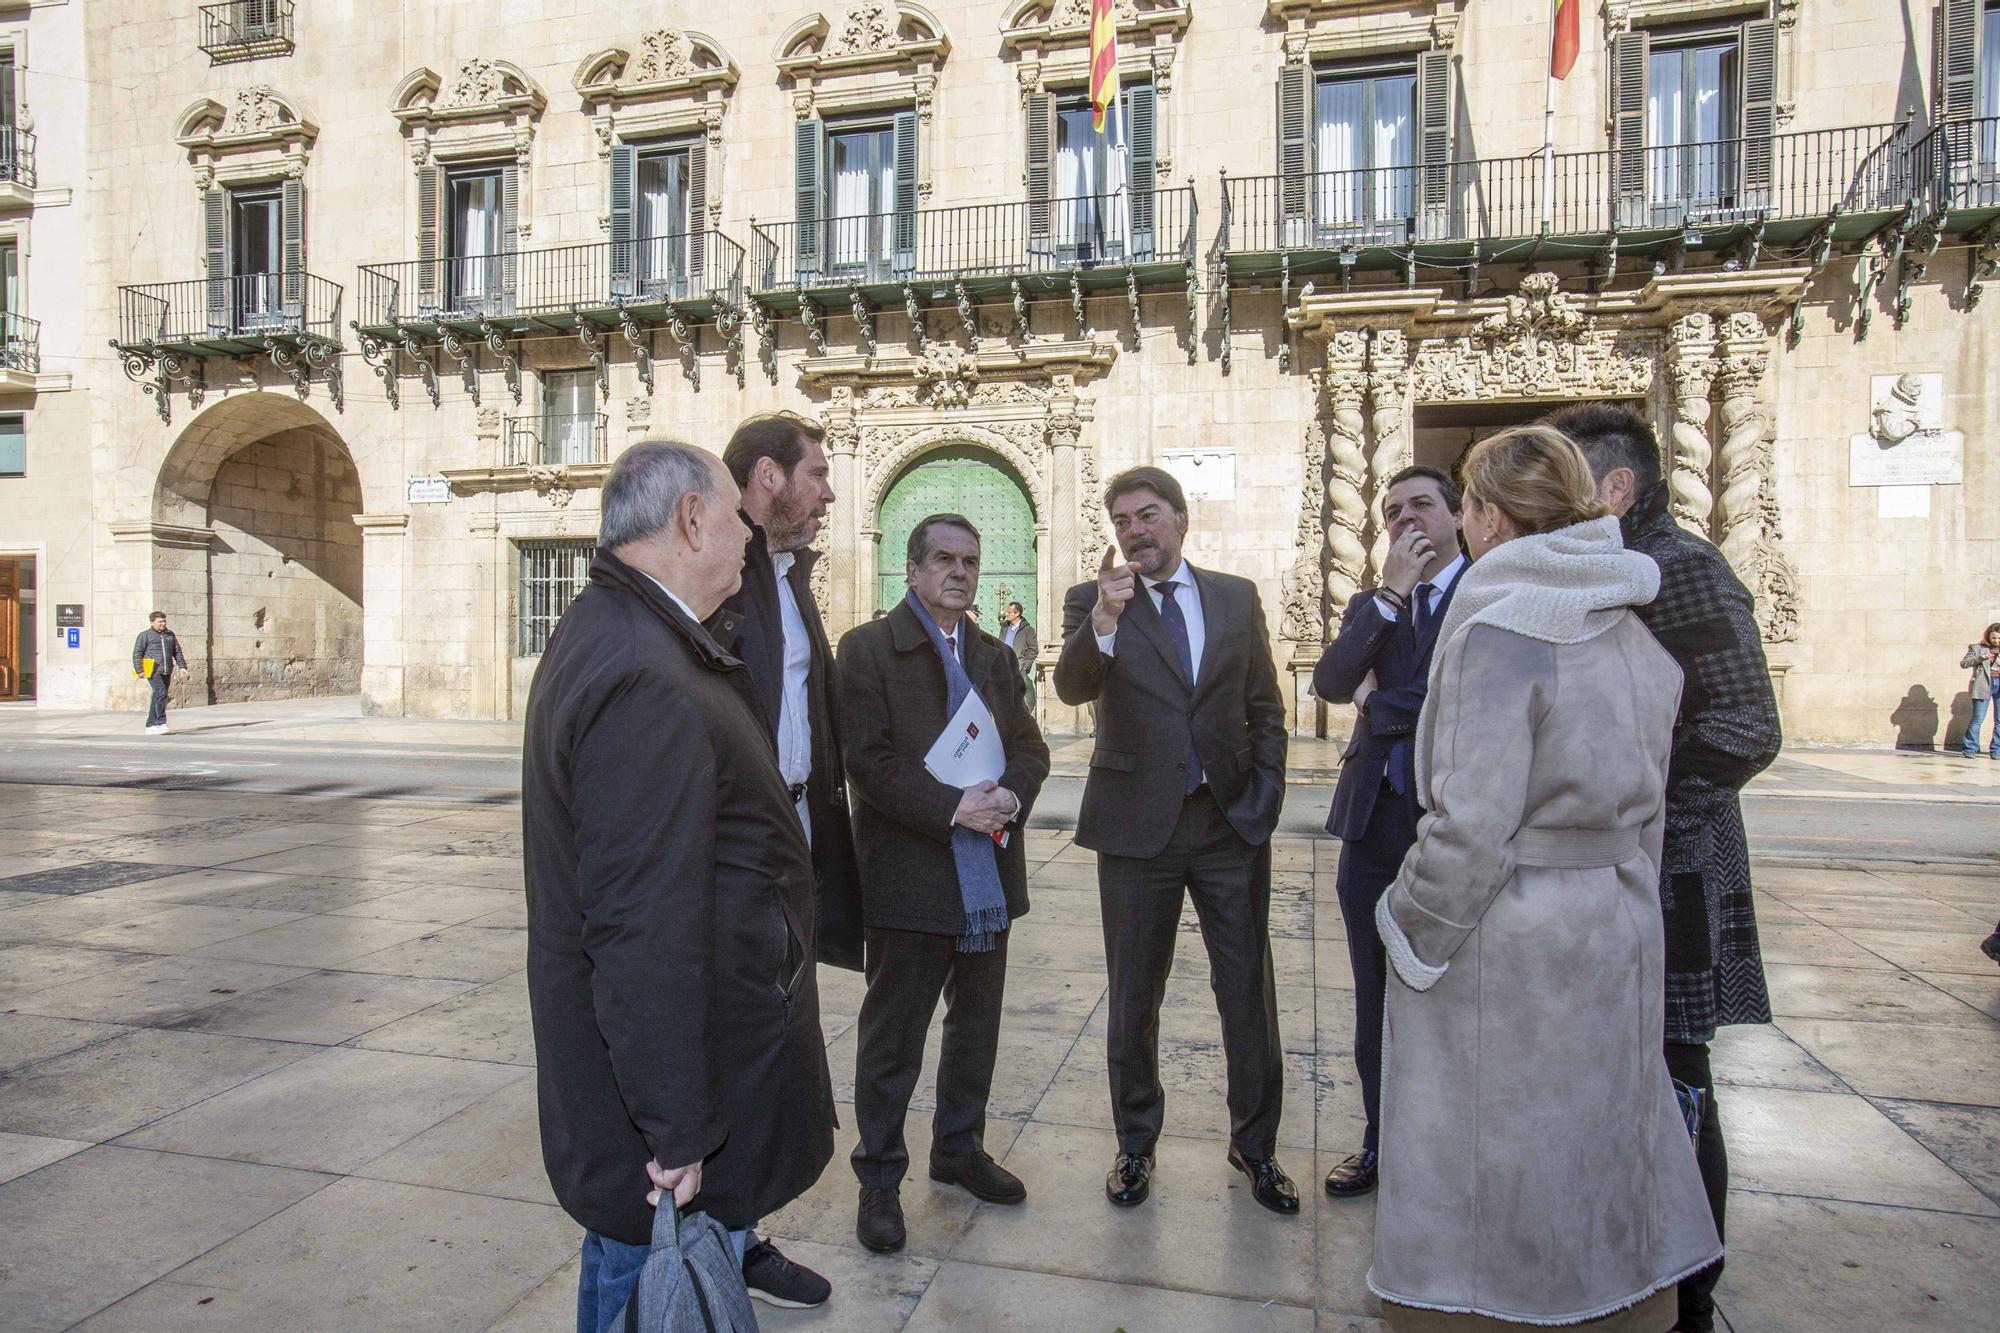 Reunión ordinaria de la Junta de Gobierno de la Federación Española de Municipios y Provincias (FEMP).